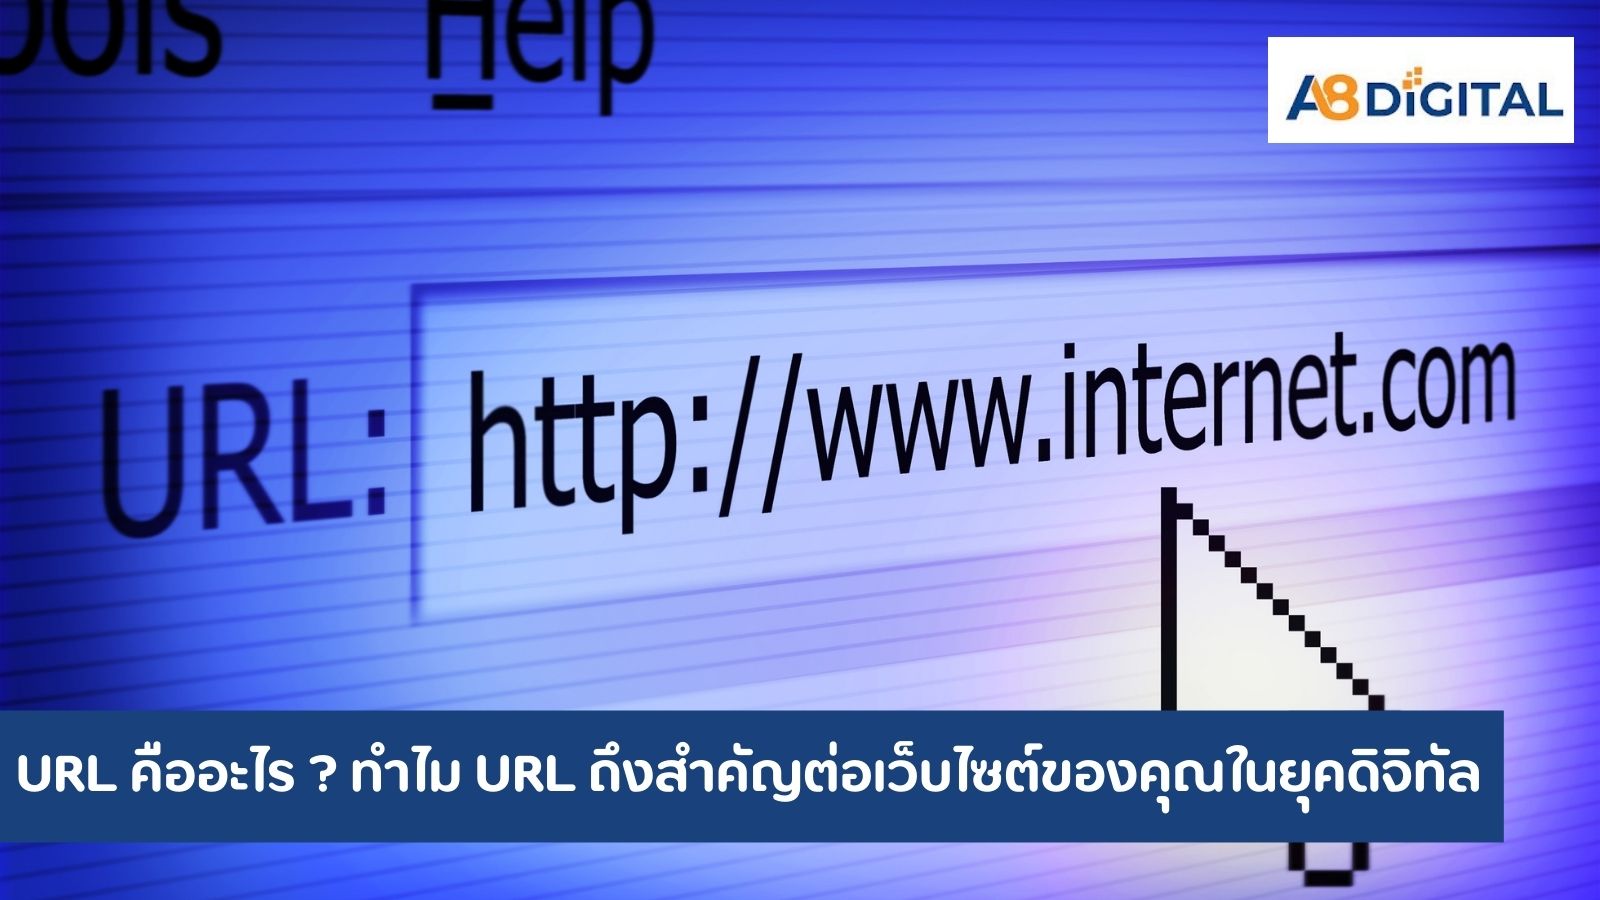 URL คืออะไร ทำไม URL ถึงสำคัญต่อเว็บไซต์ของคุณในยุคดิจิทัล